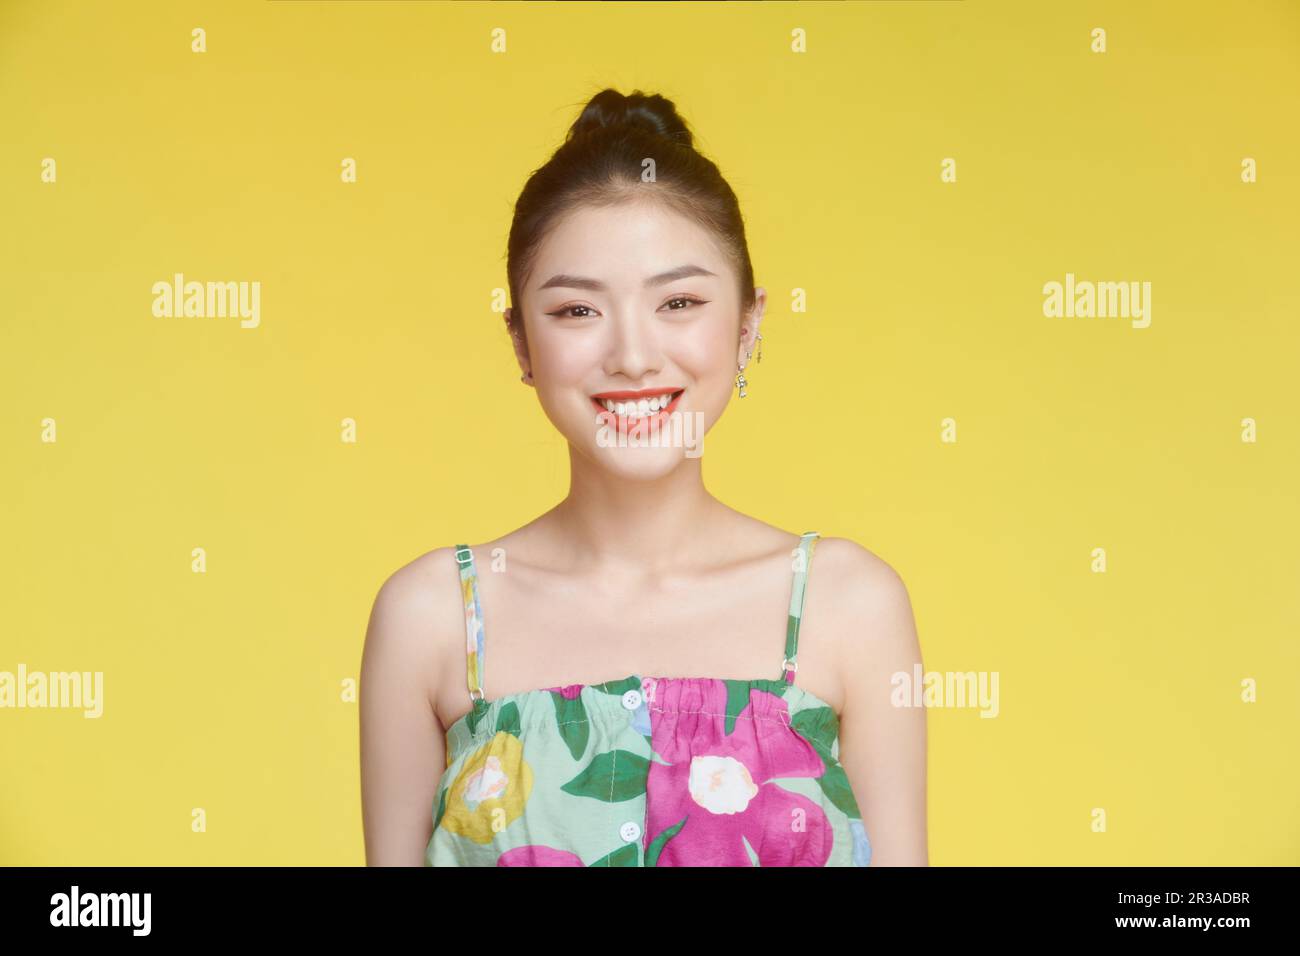 Ritratto di bella donna soddisfatto toothy sorriso guardare fotocamera isolato su sfondo giallo Foto Stock